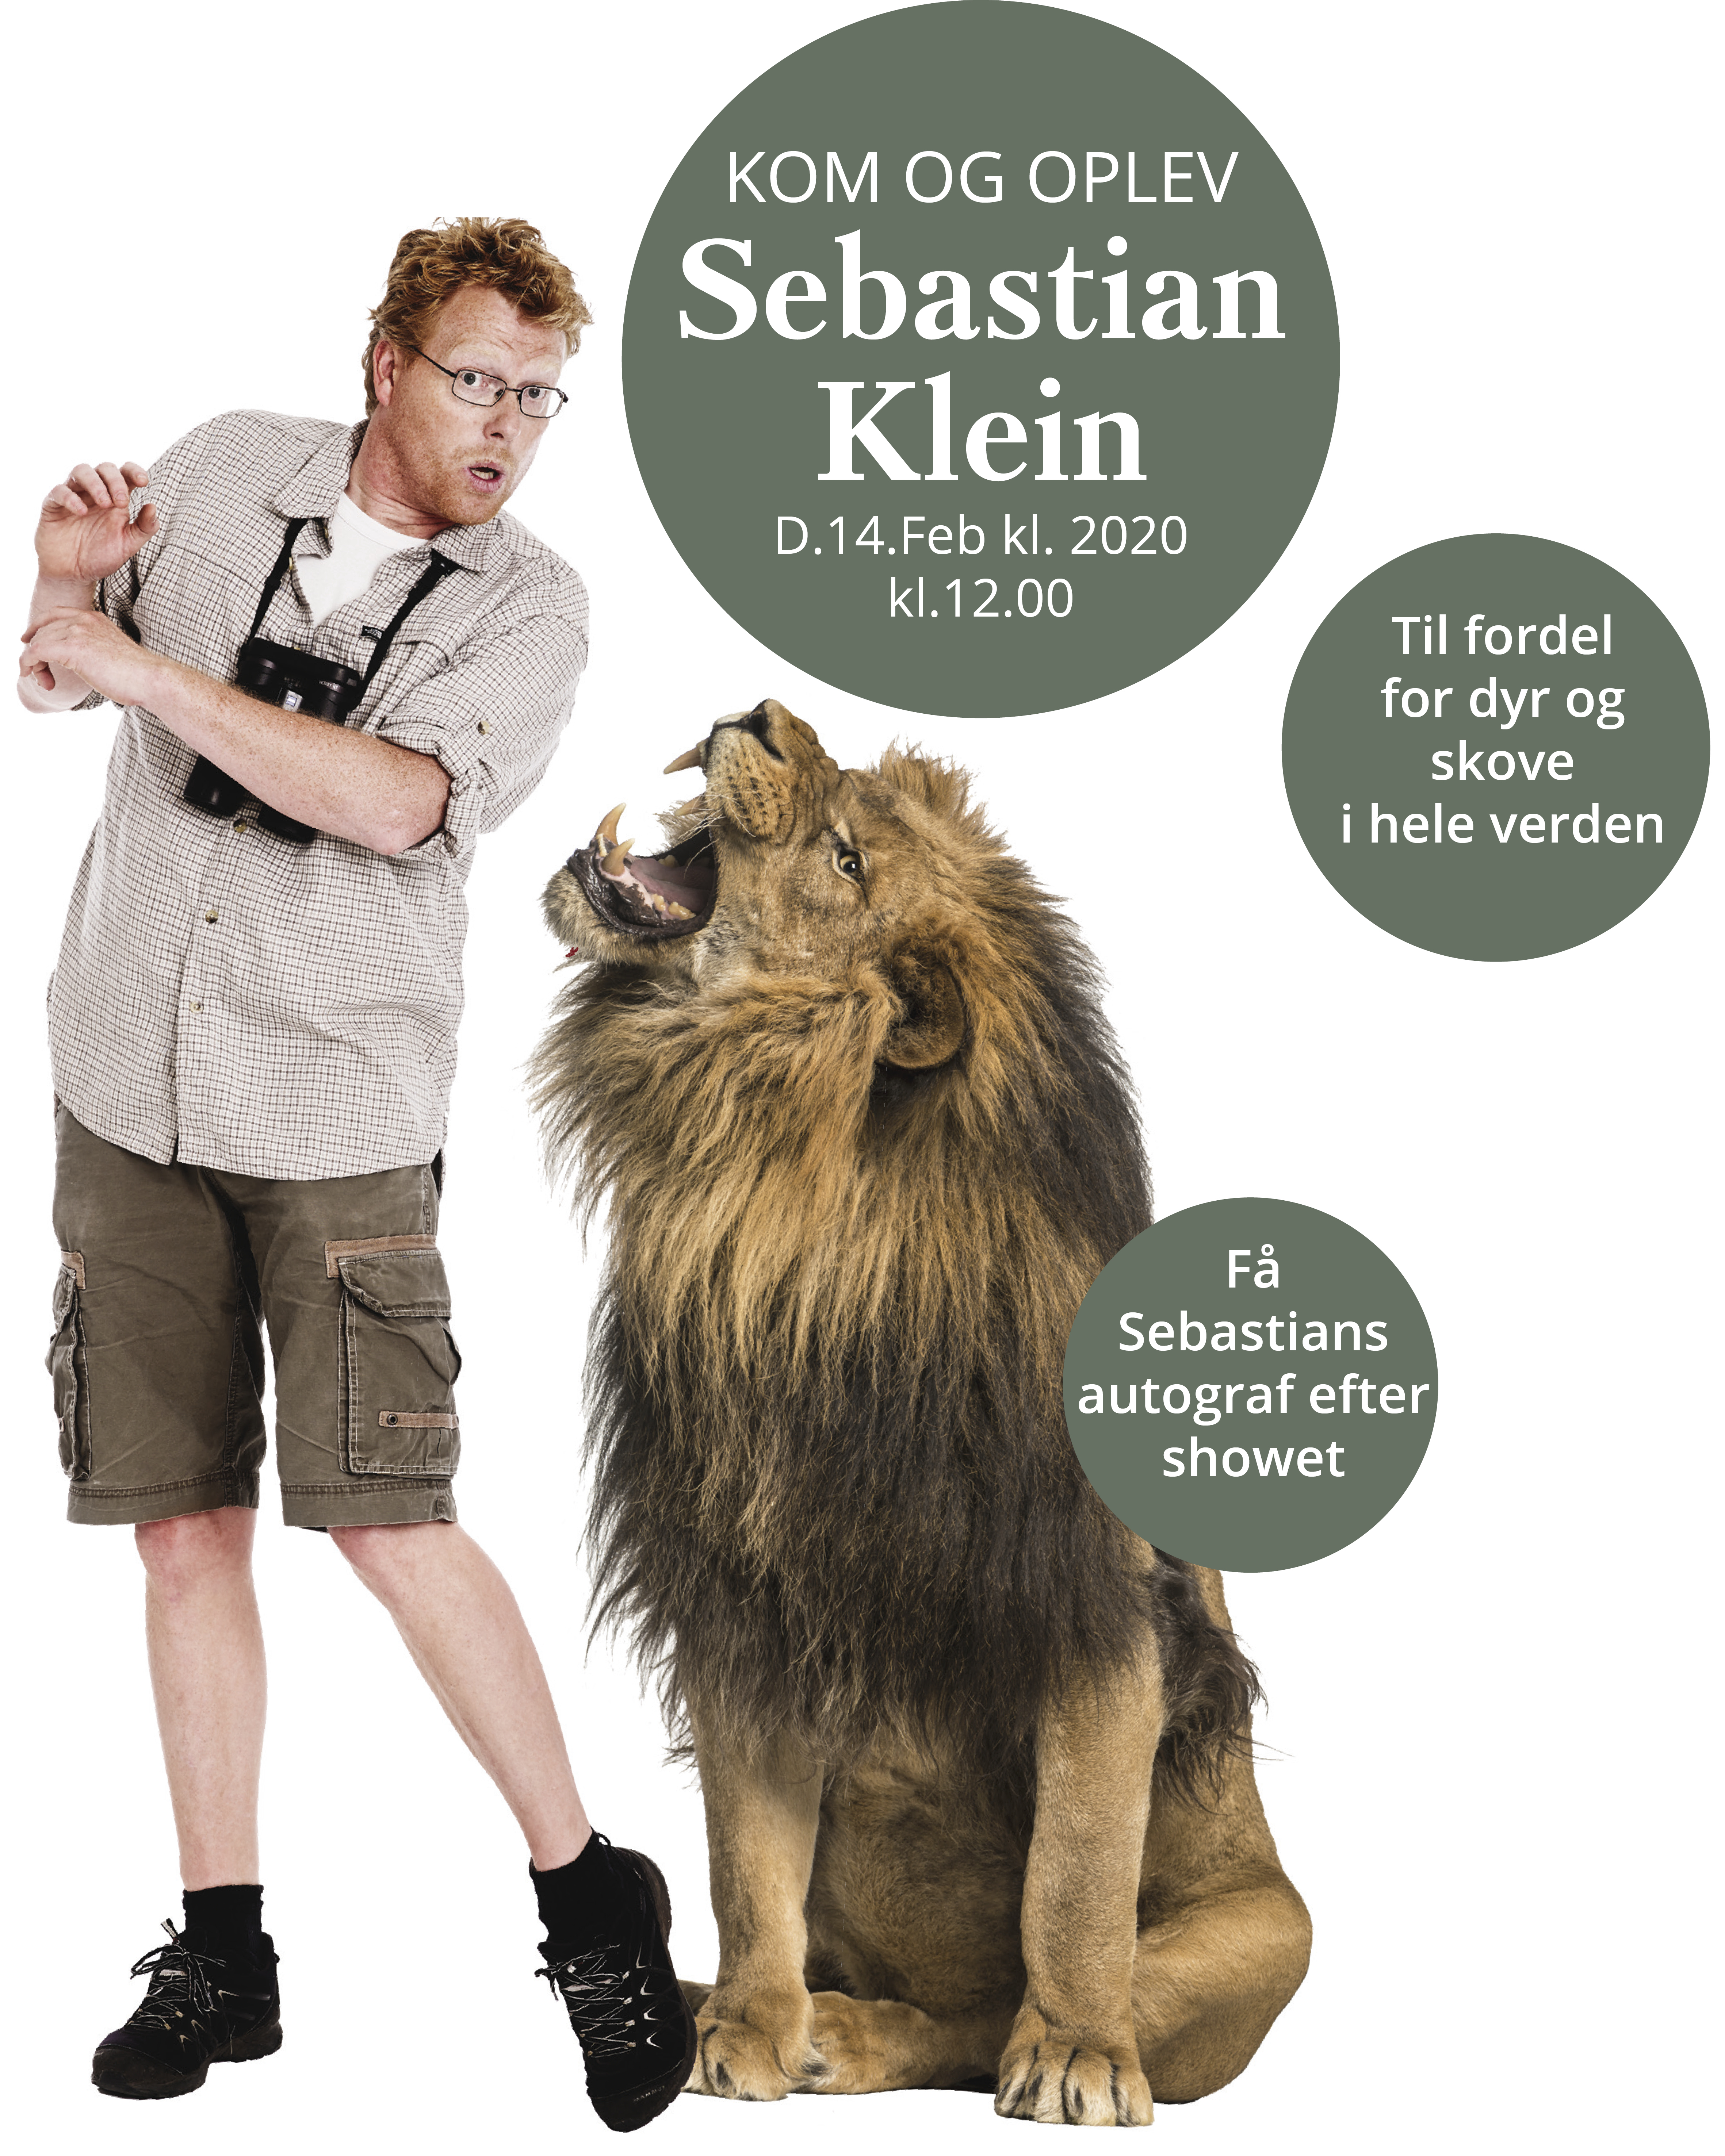 Kom og oplev Sebastian lLein i skolernes vinterferie - og støt Verdens Skove